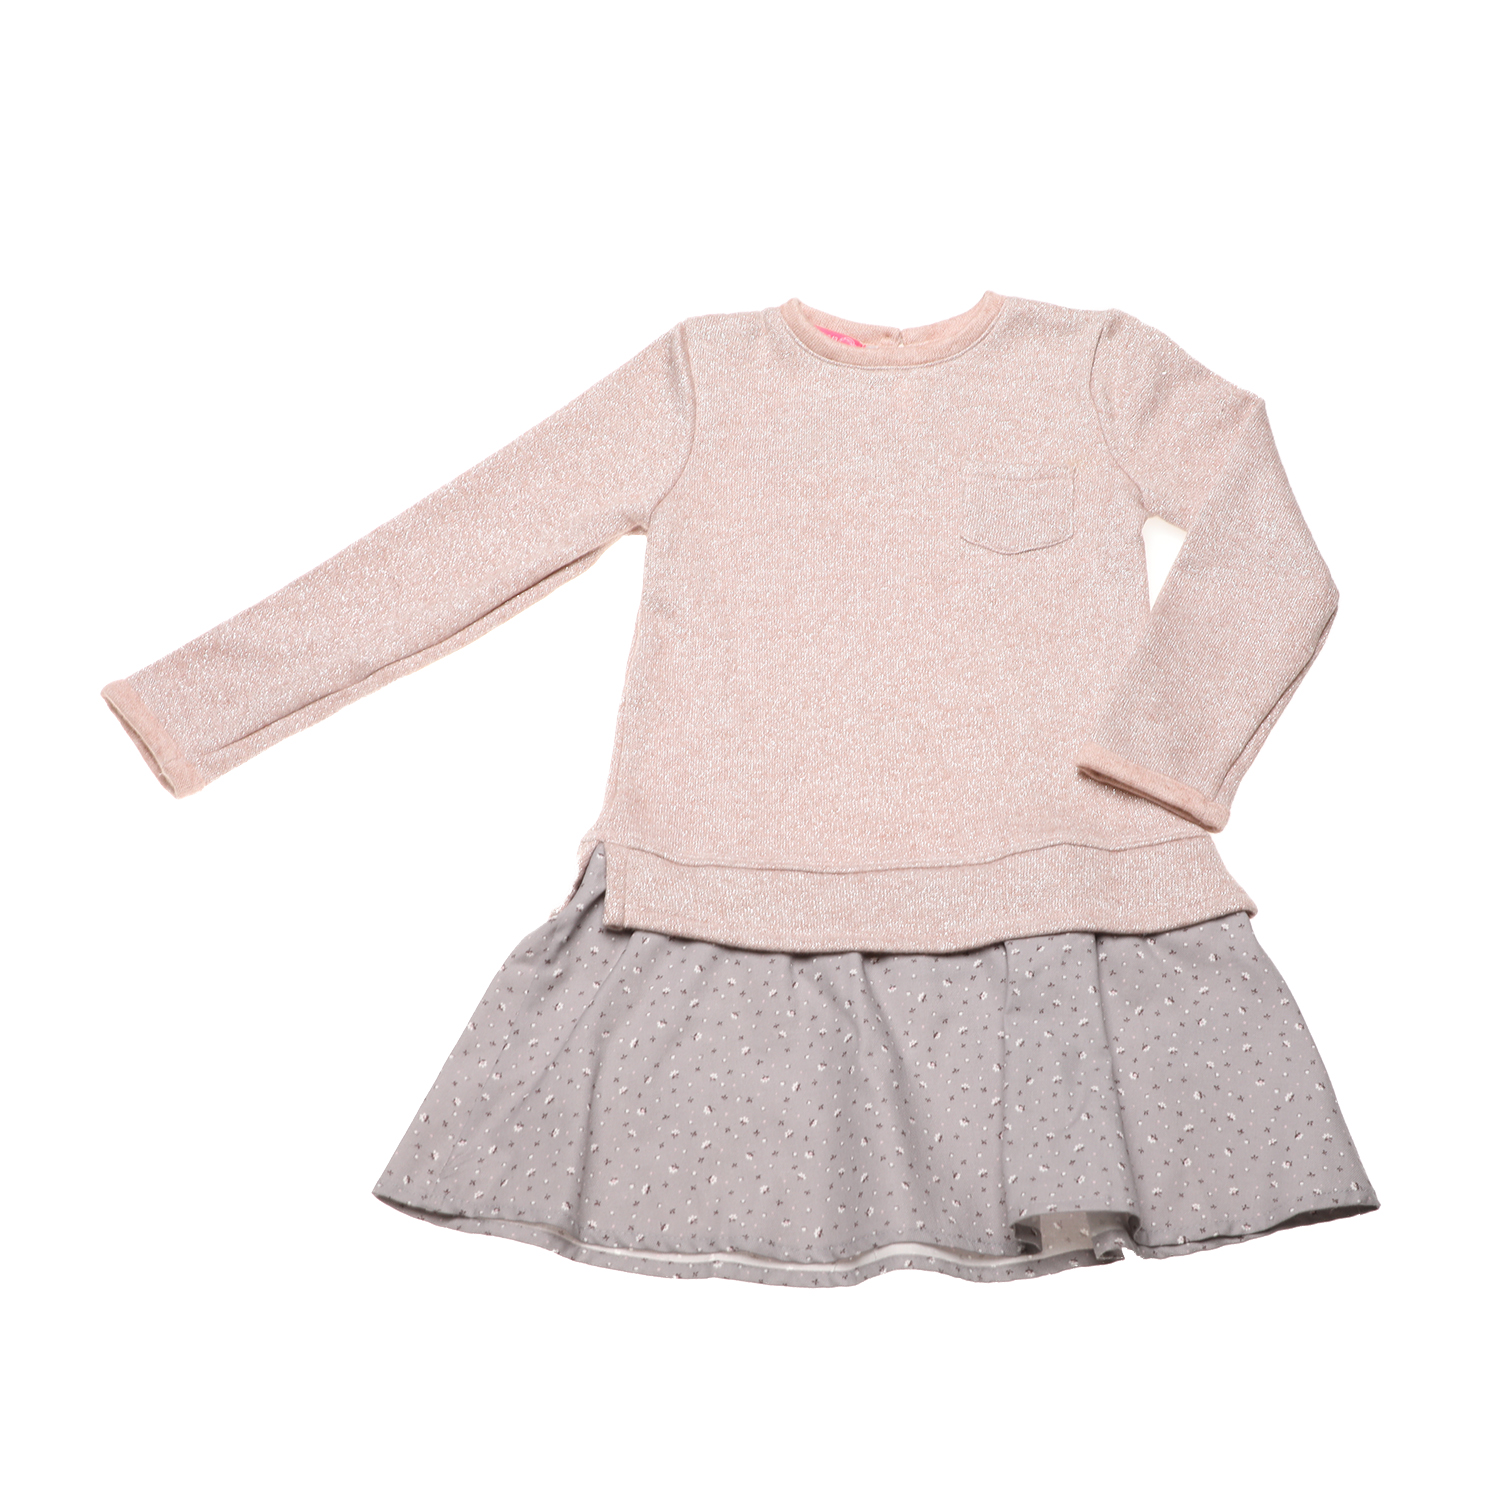 Παιδικά/Girls/Ρούχα/Φορέματα Μακρυμάνικα SAM 0-13 - Παιδικό πλεκτό φόρεμα SAM 0-13 ροζ γκρι